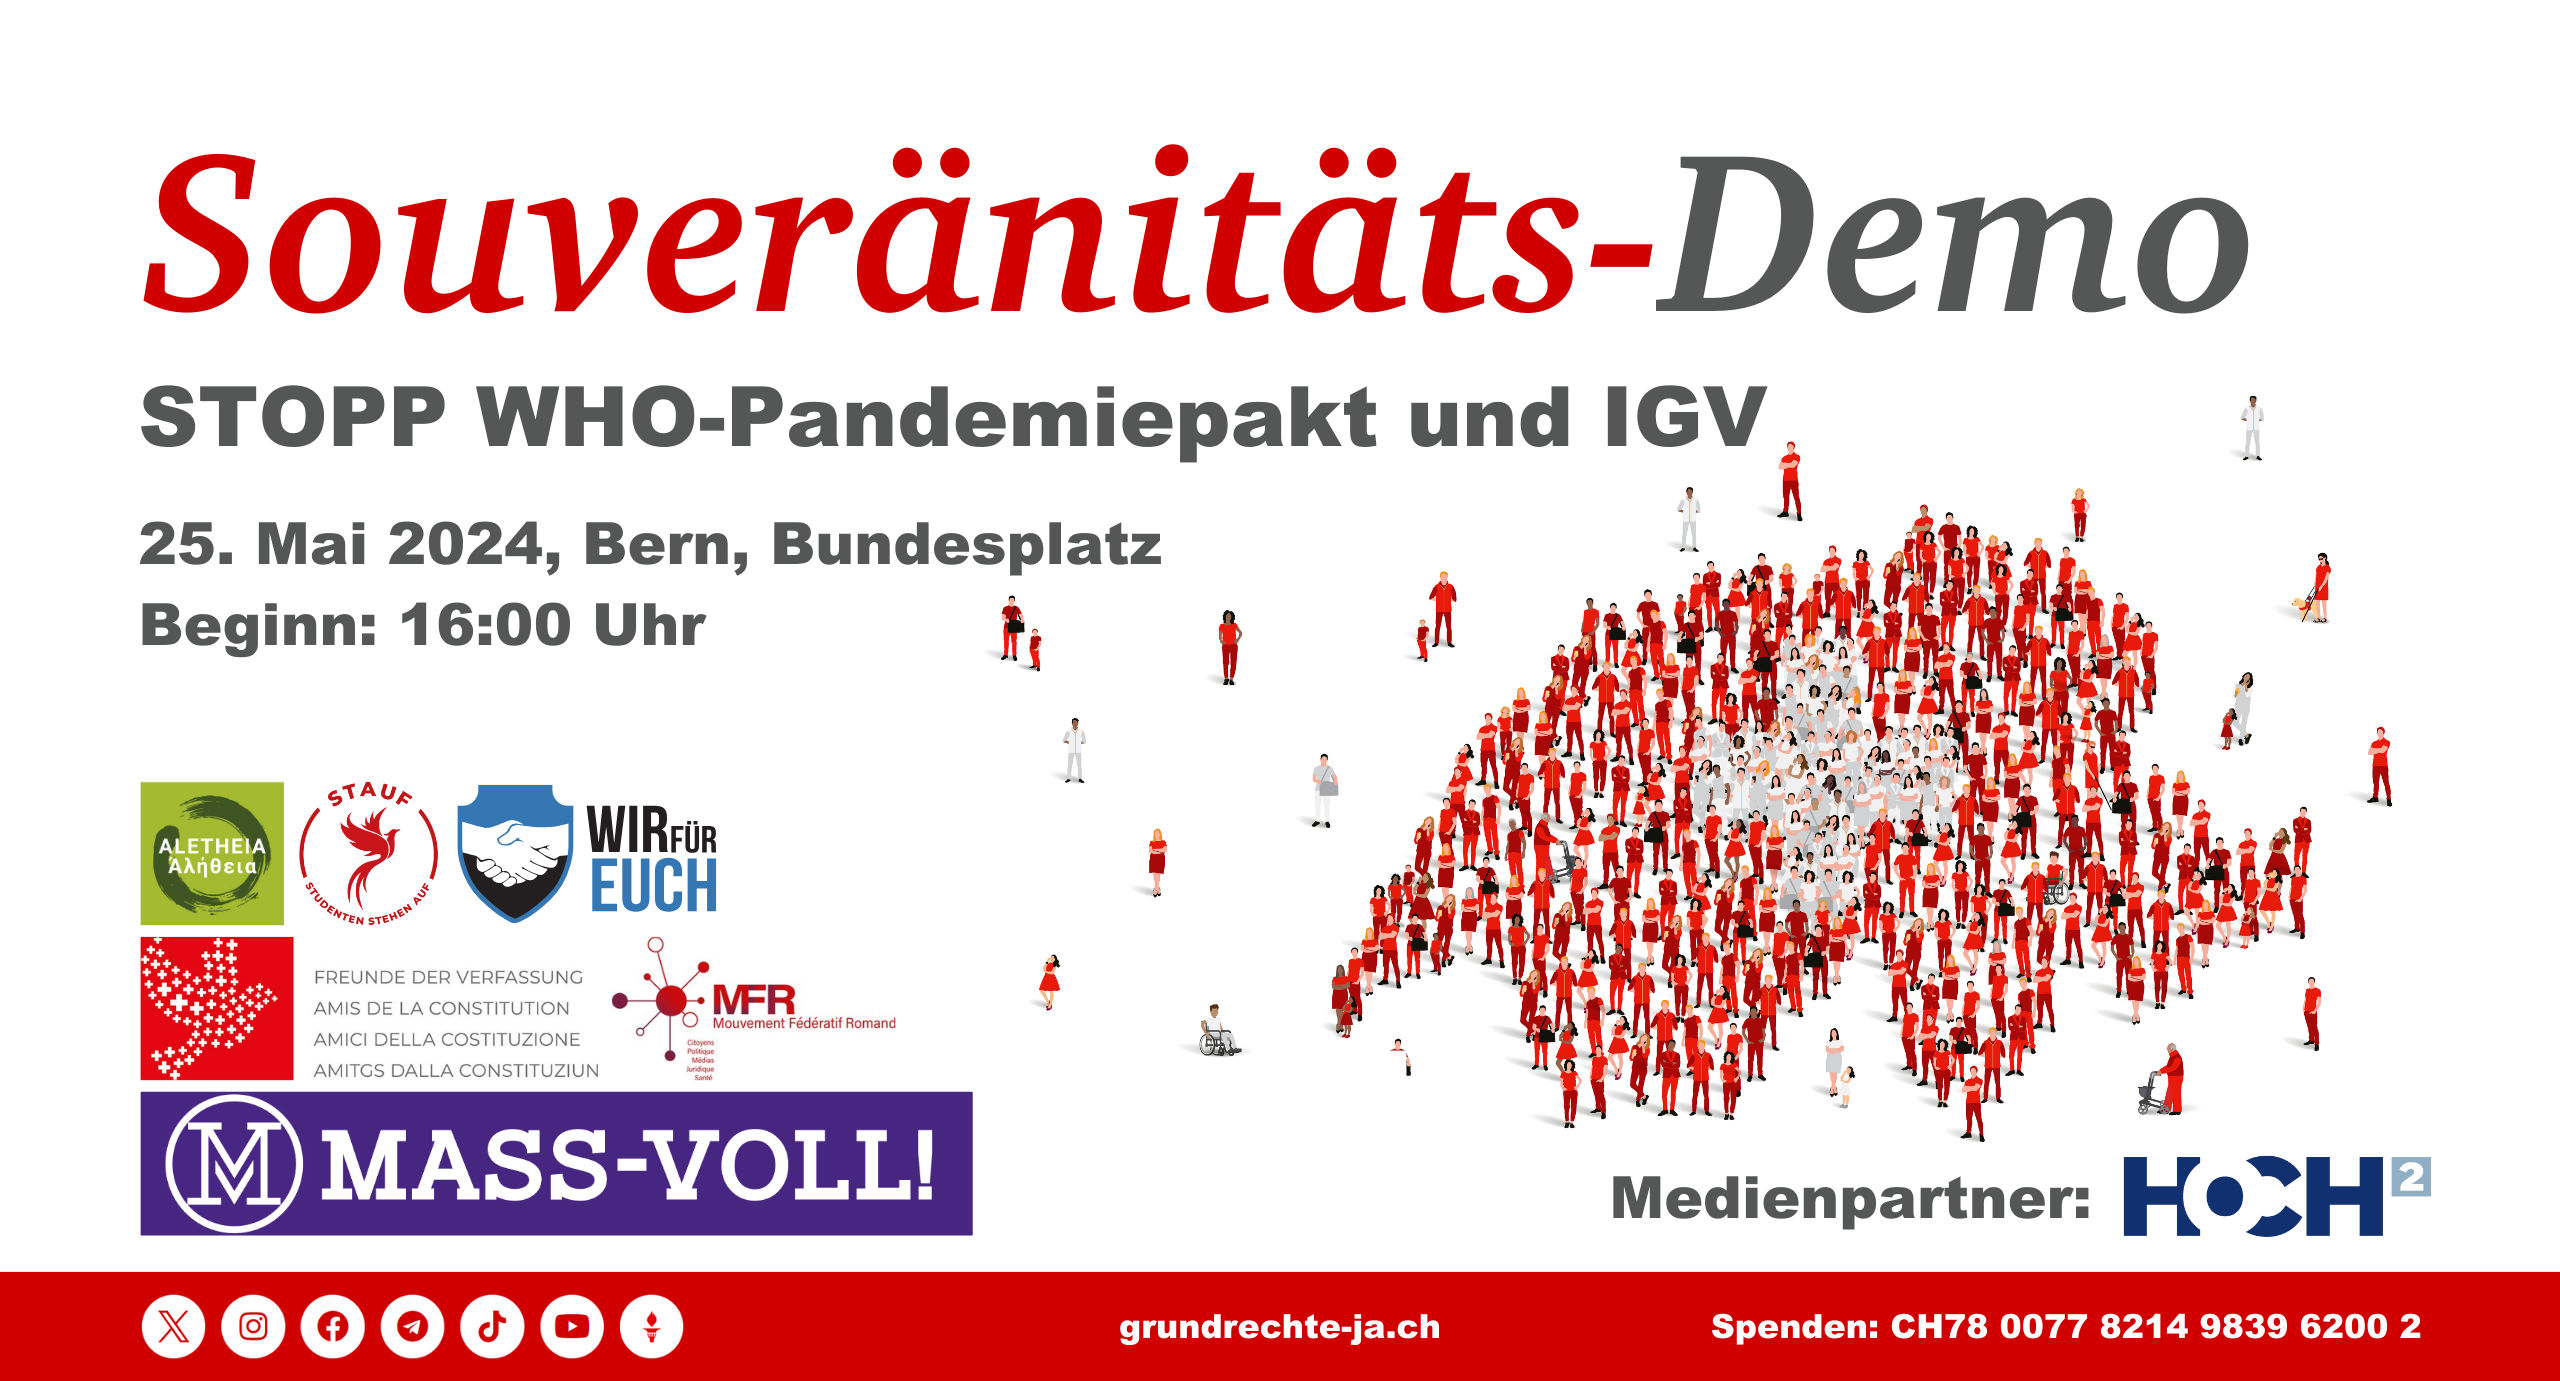 Souveränitäts-Demo am 25.05.2024 16:00 Uhr auf dem Bundesplatz in Bern